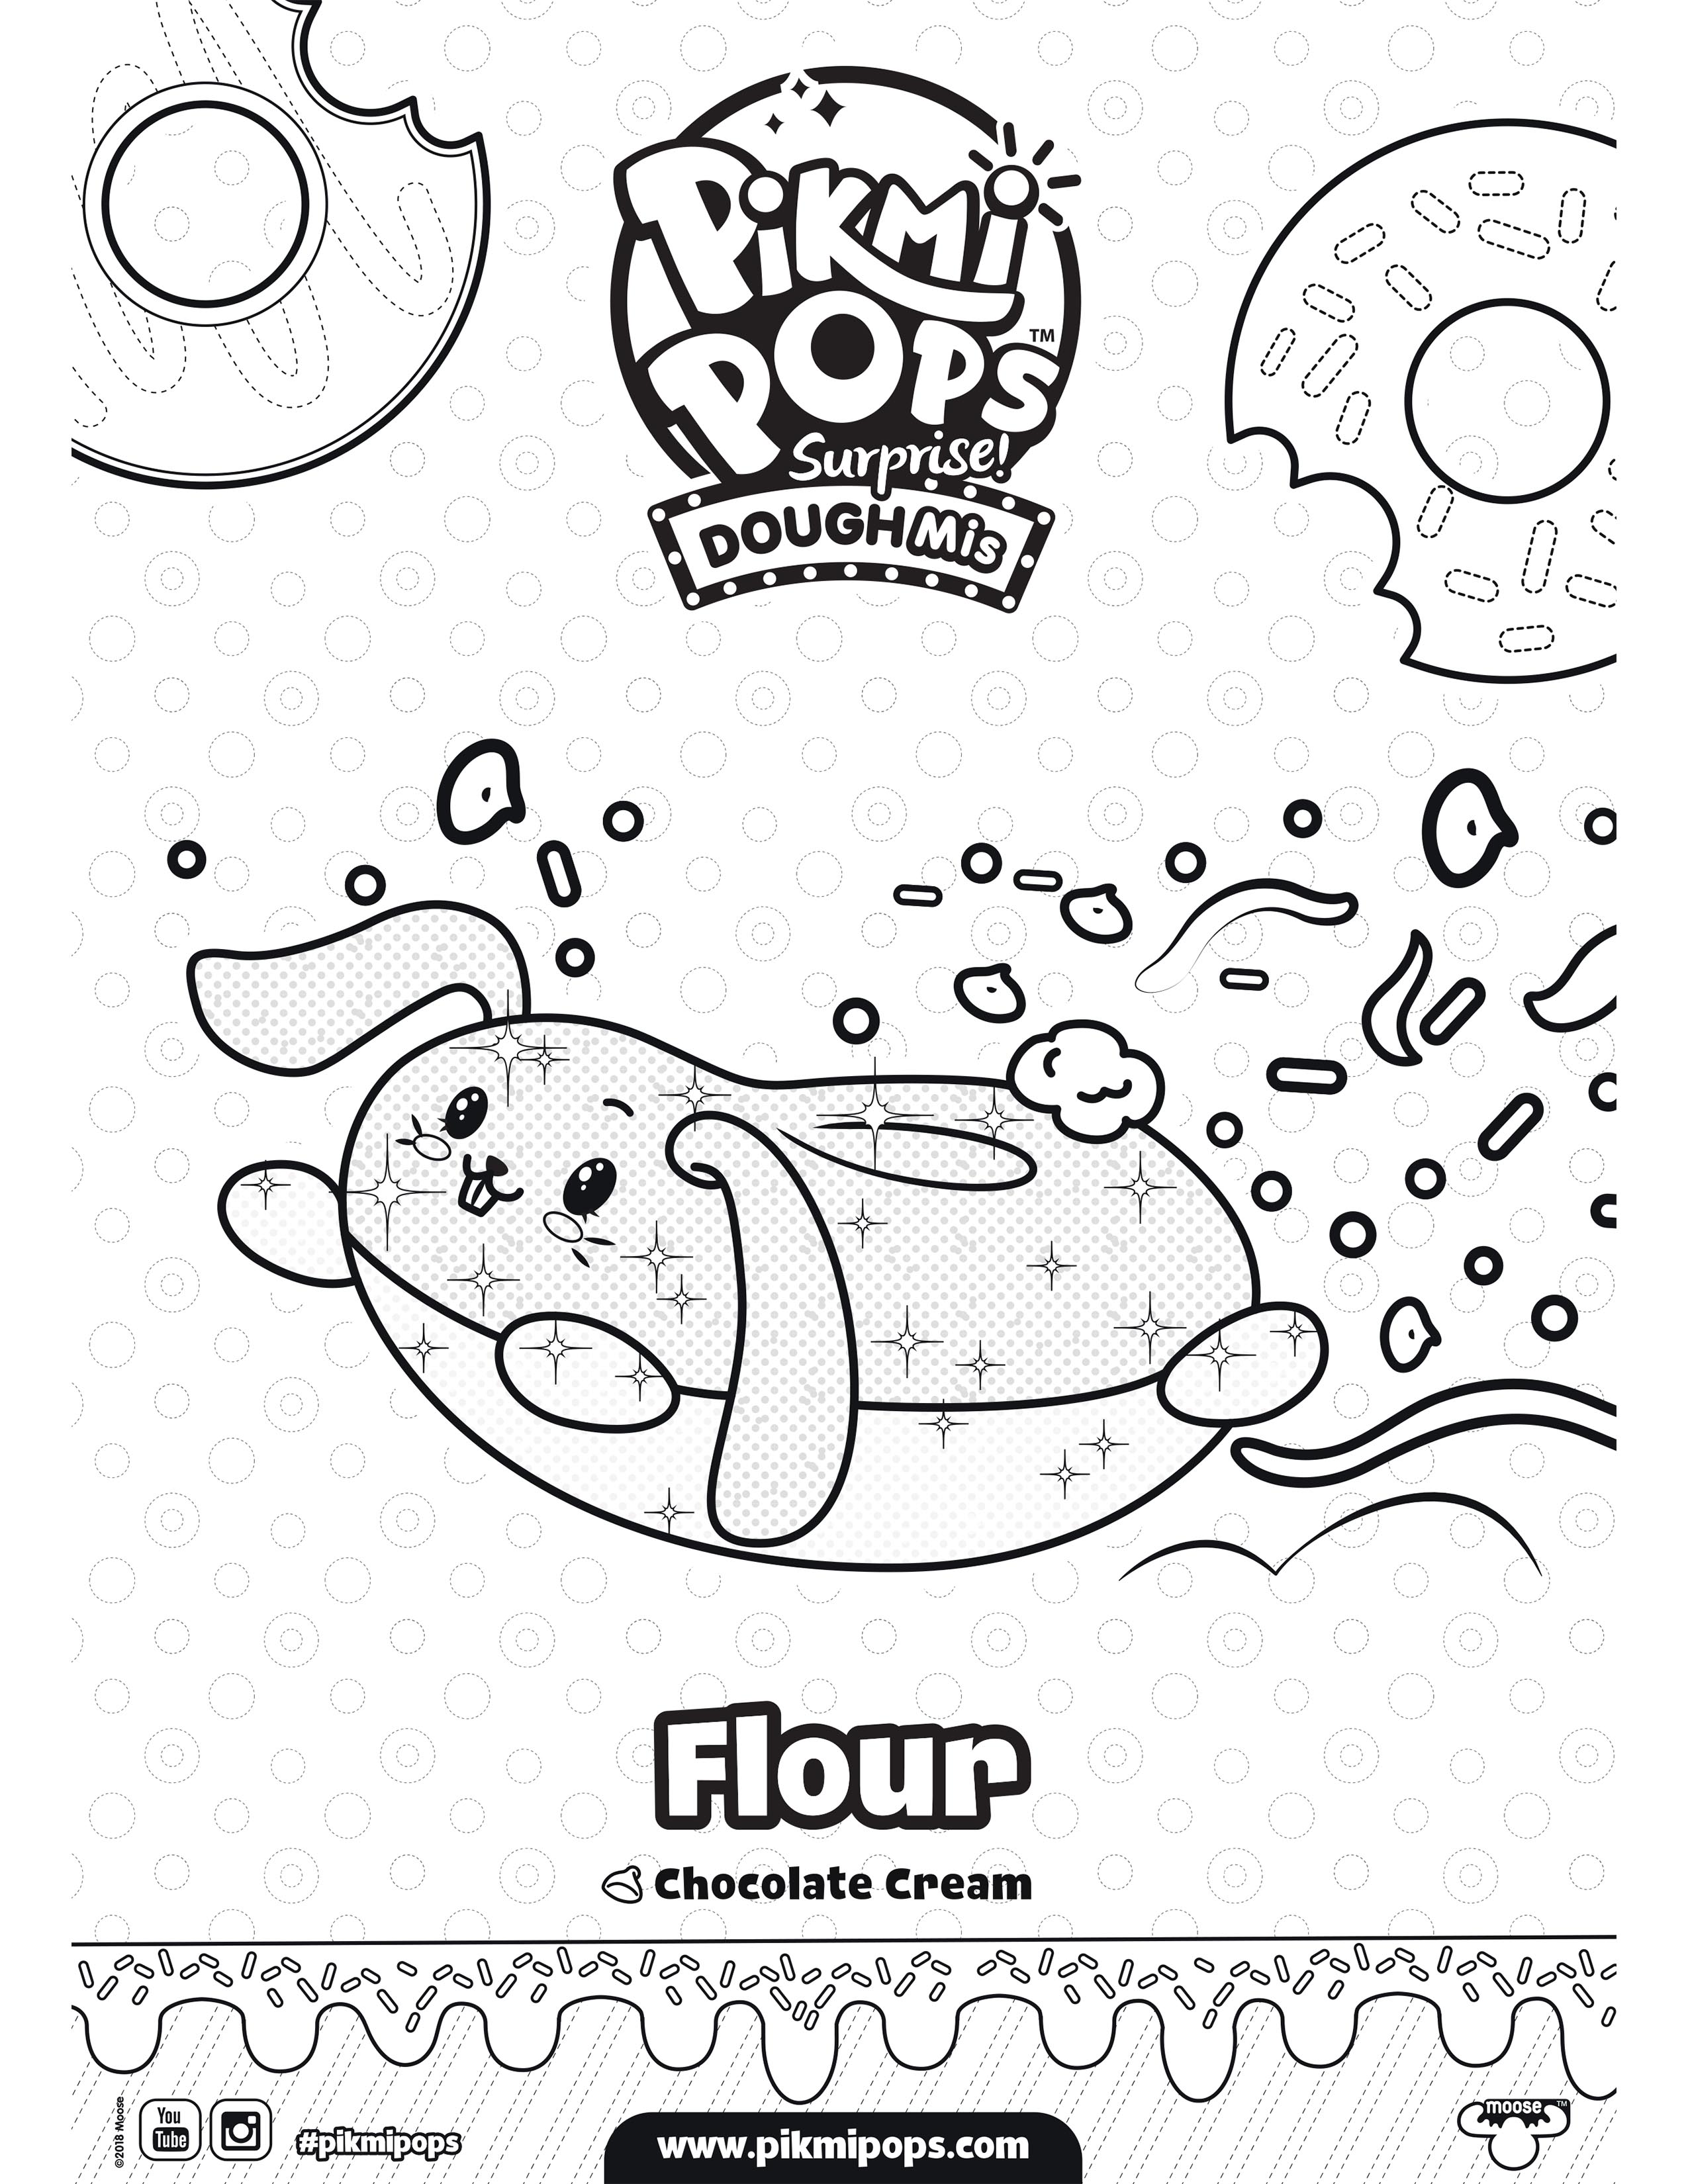 pikmi-pops-surprise-season-4-dough-mis-coloring-sheet-flour – Kids Time